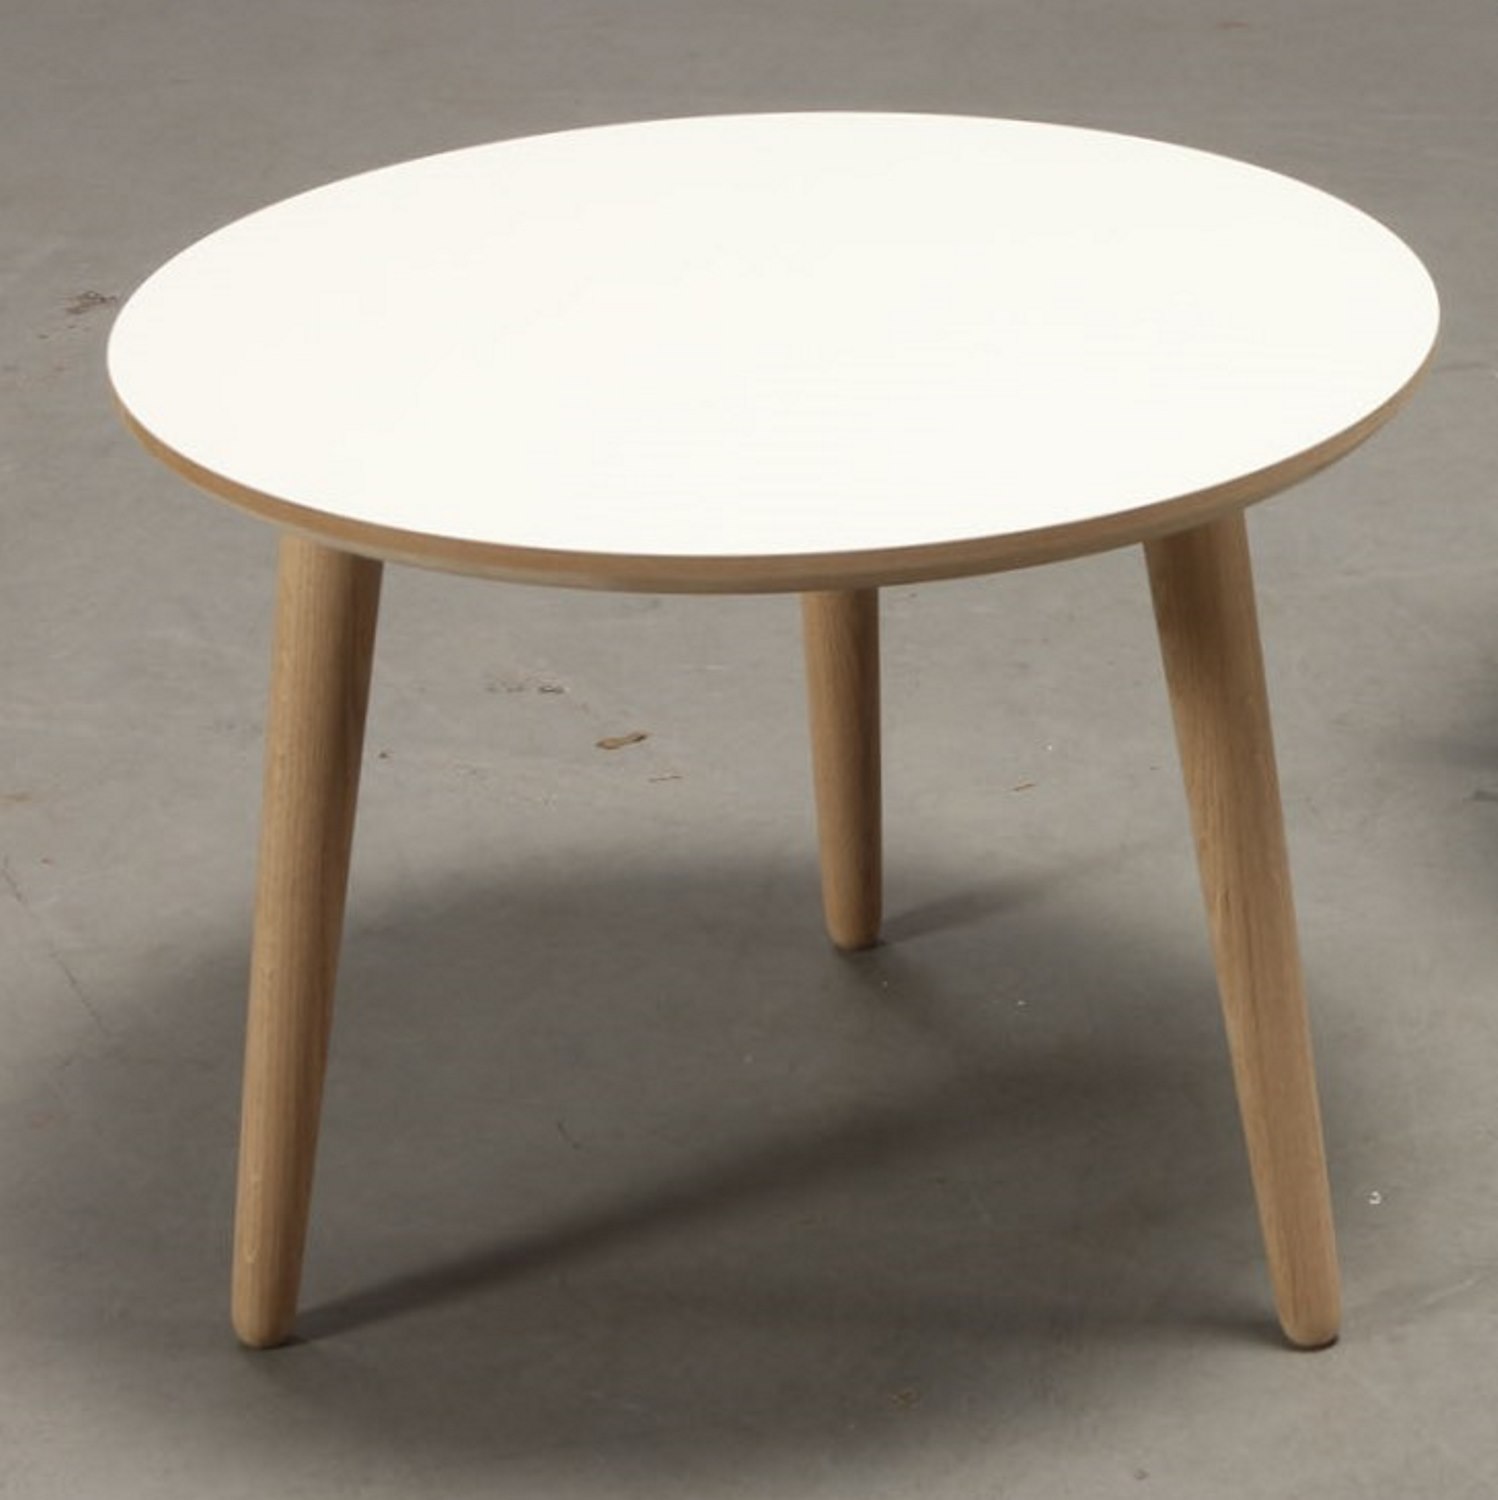 klud nåde Specialitet CT 20 - Sofabord i hvid laminat med ege ben, vælg mellem 4 størrelser -  Sofaborde i nordisk design - 3-Nordic